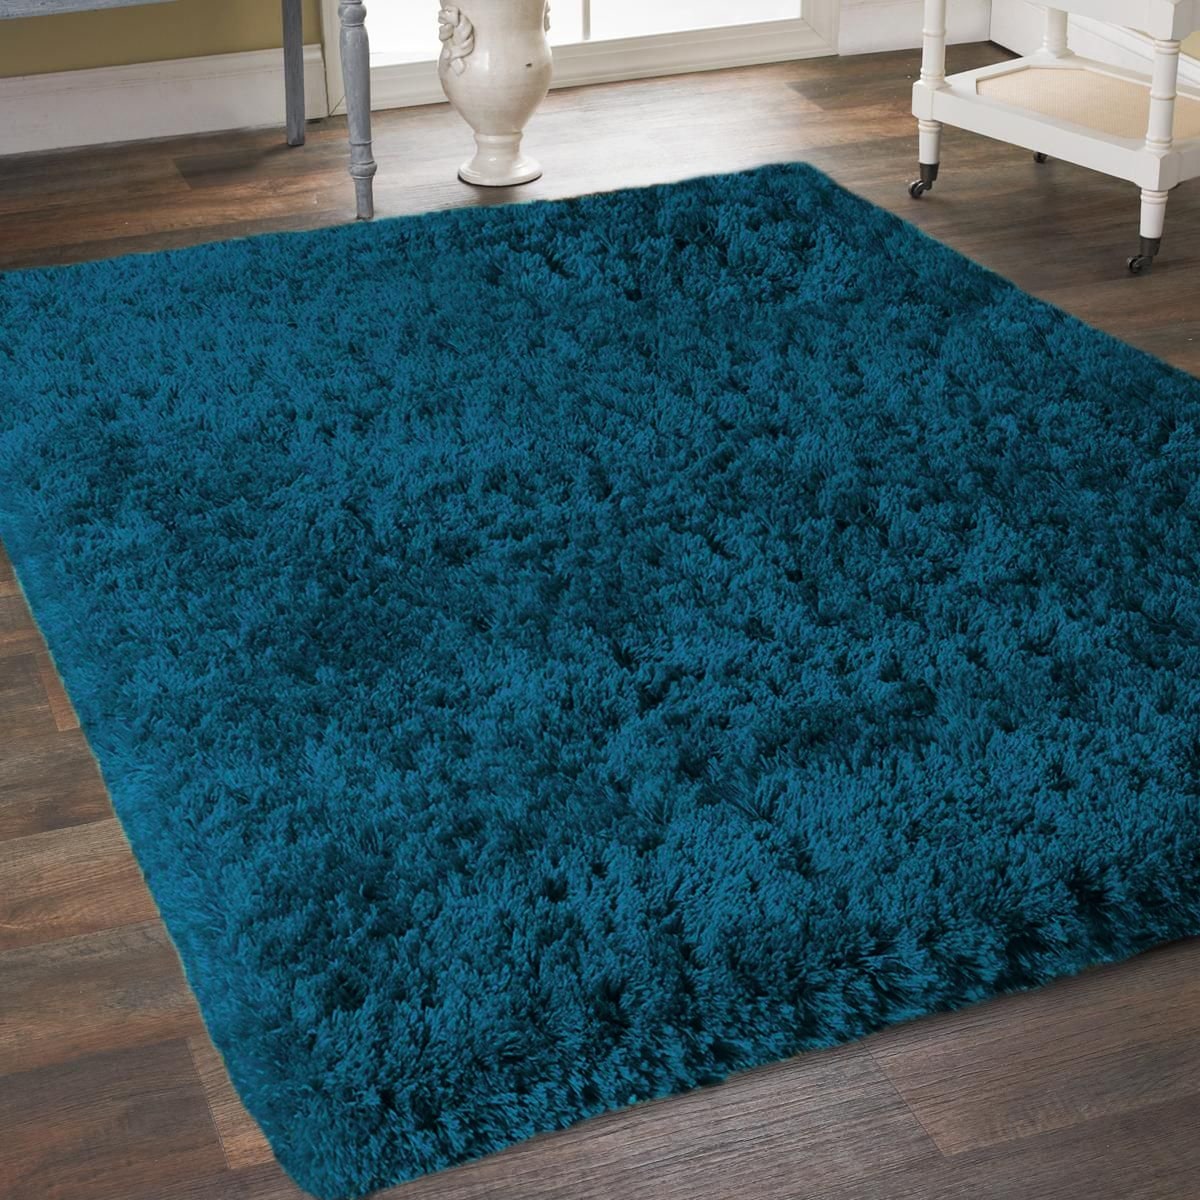 Super Soft Non-Shed Teal Blue Plain Shaggy Rug Luxury 5CM Deep Pile Area Carpet 